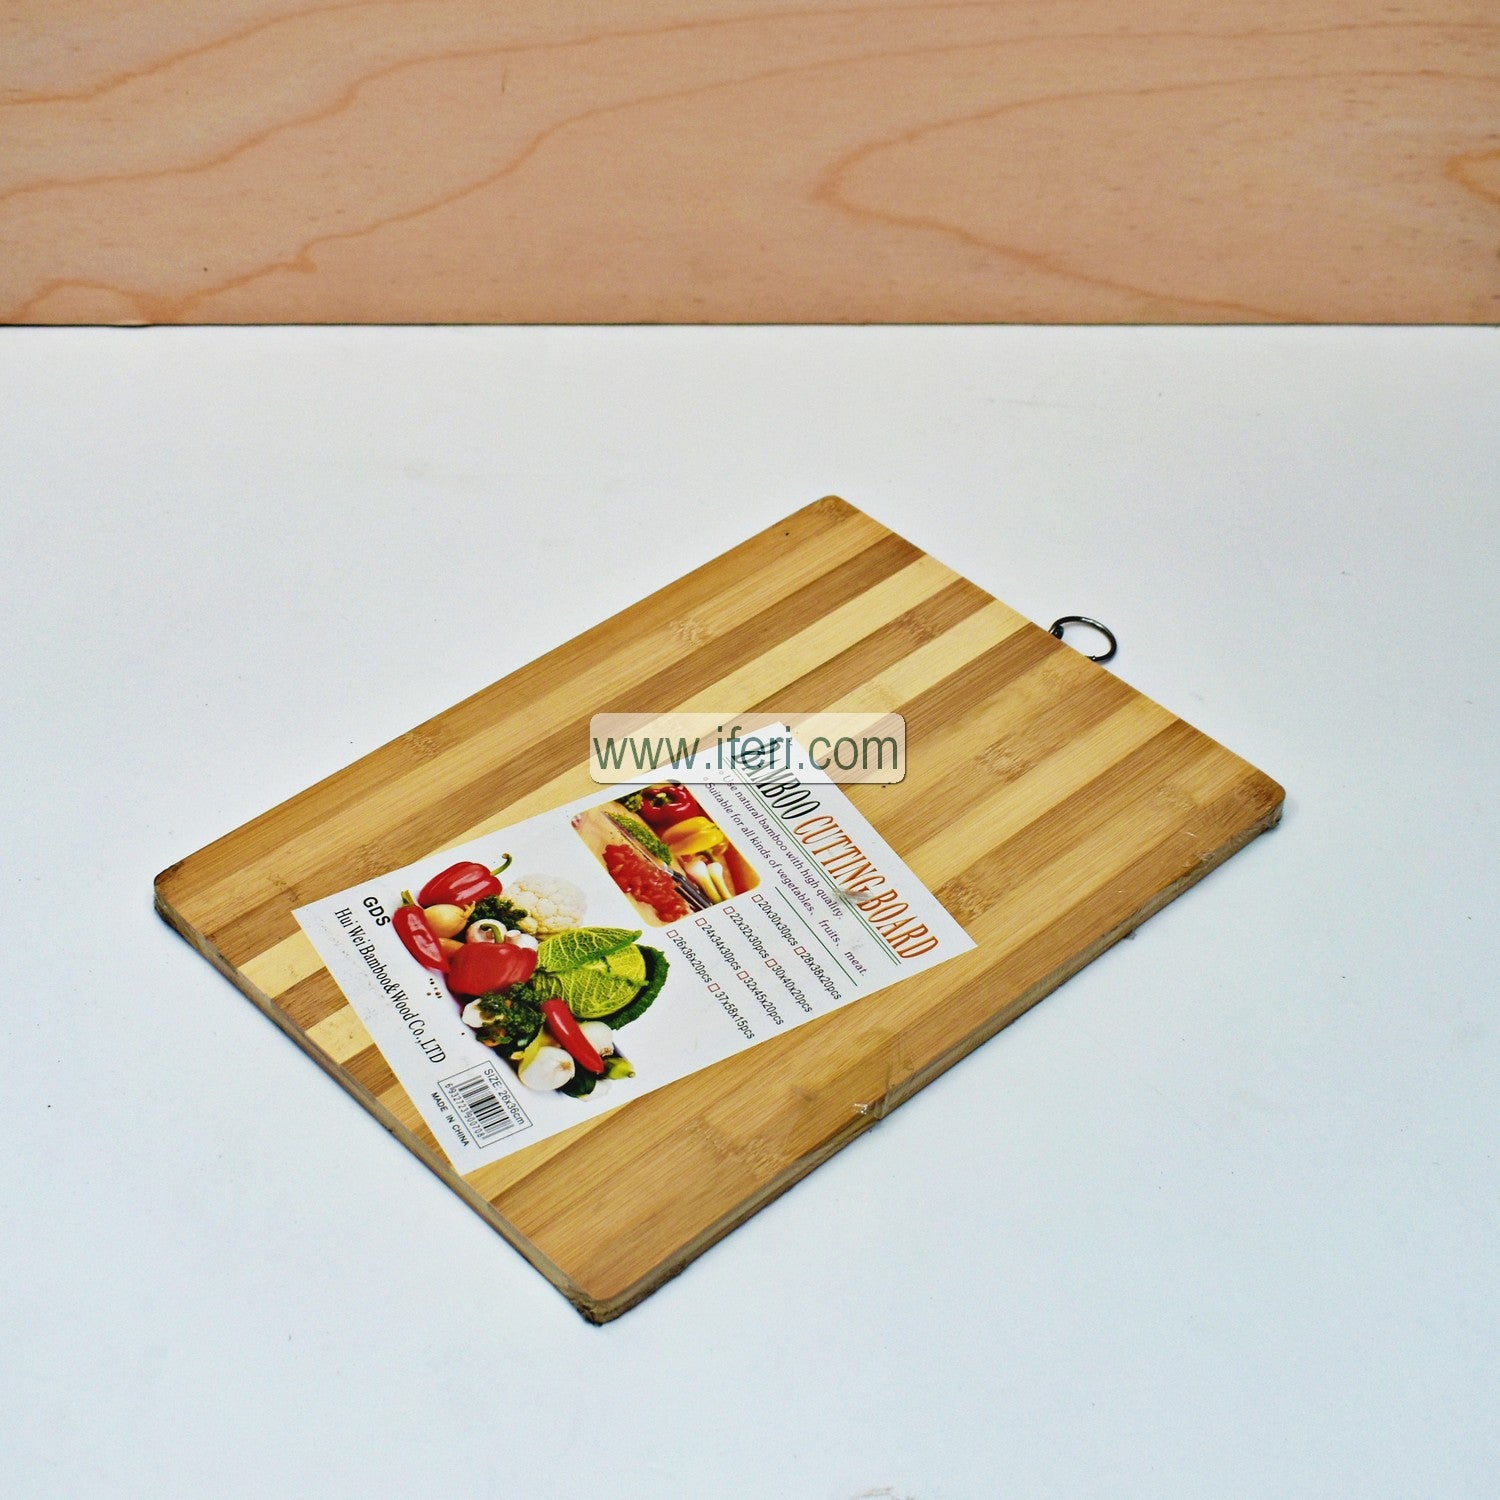 14 inch Bamboo Cutting Board/Chopping Board RY0799